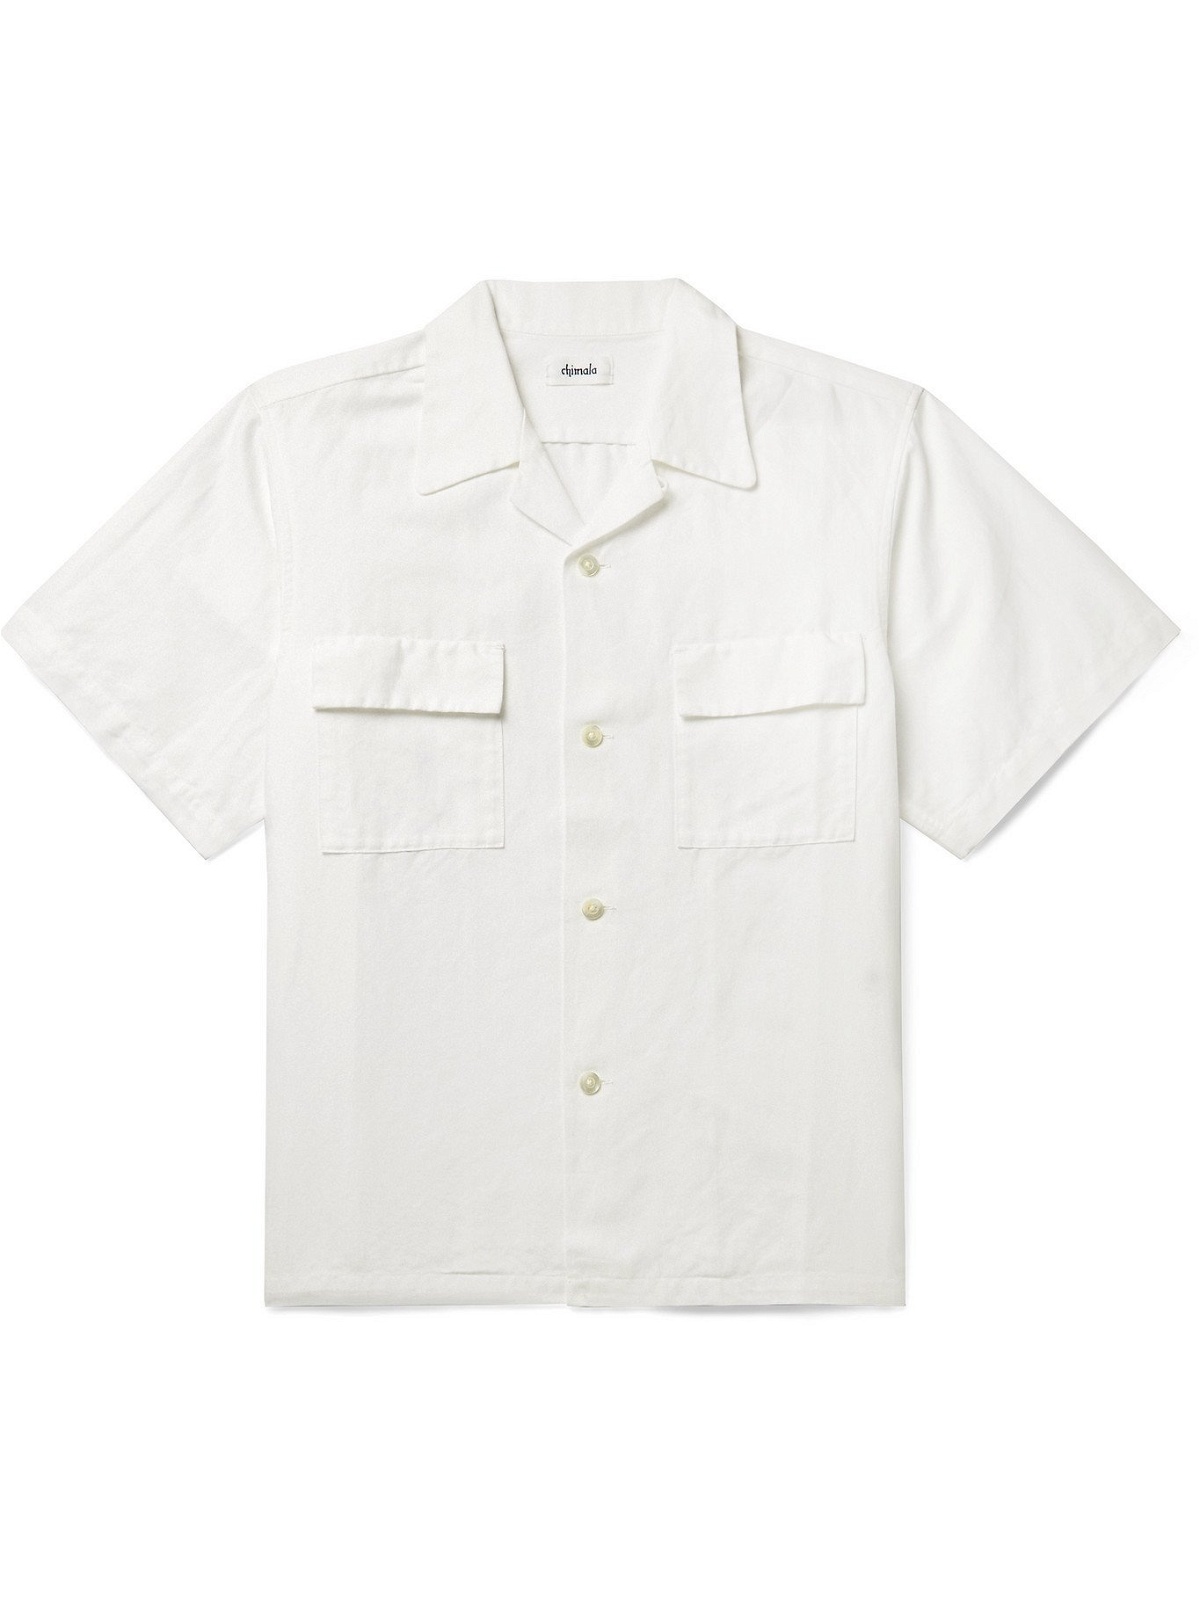 Photo: CHIMALA - Camp-Collar Herringbone Ramie and Cotton-Blend Shirt - White - S